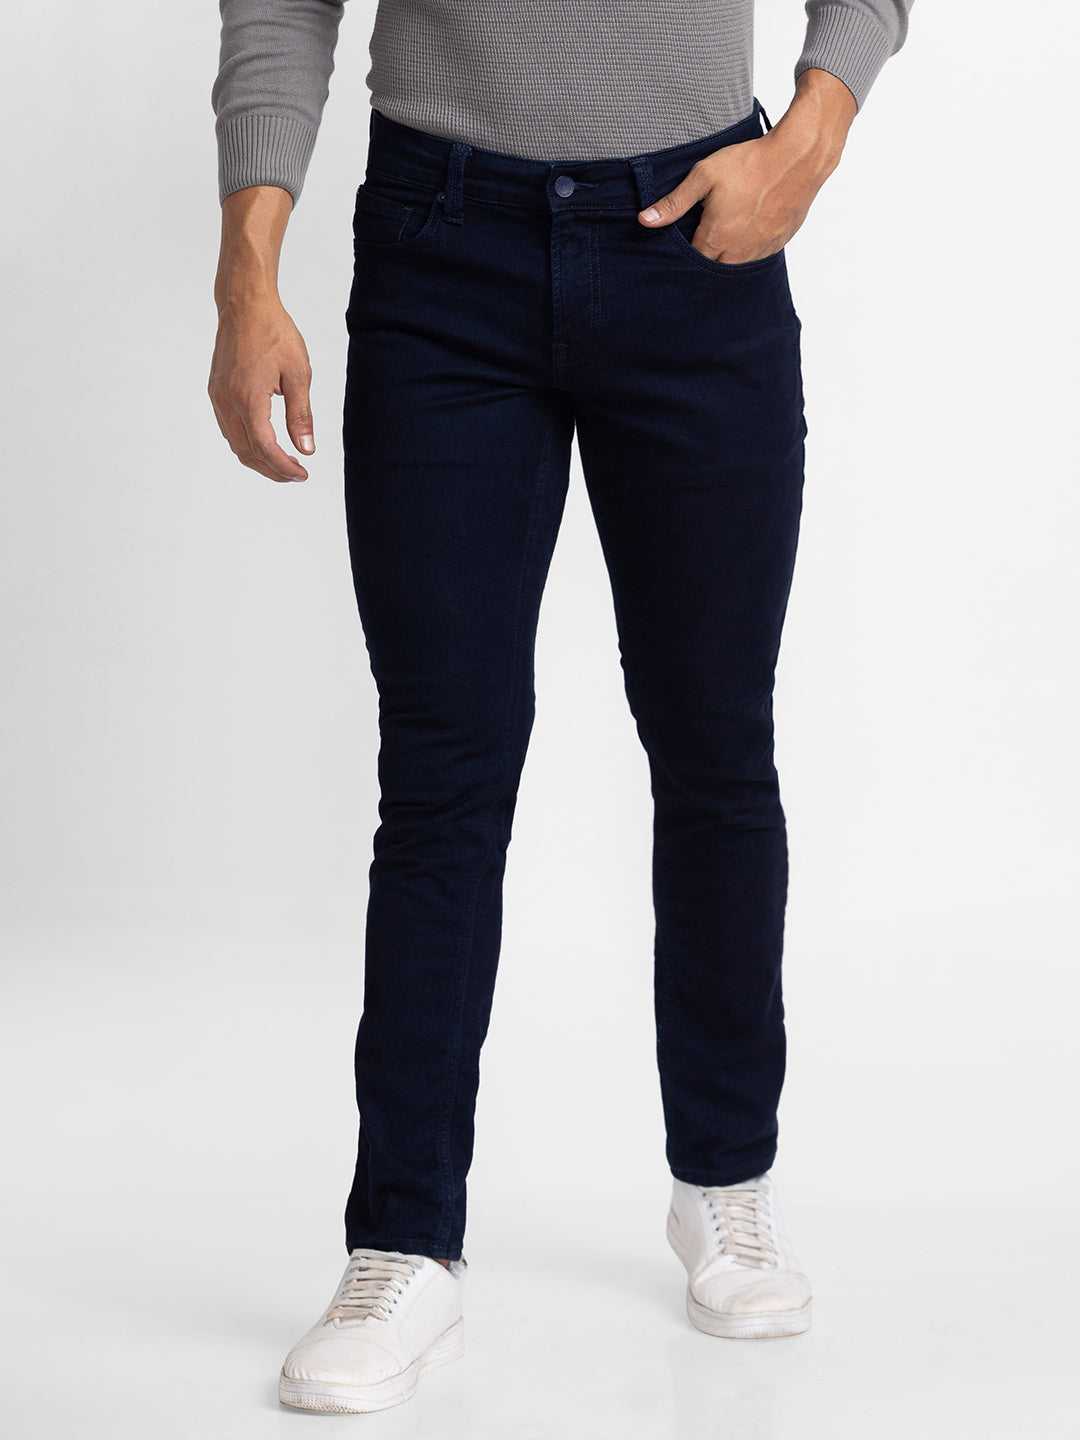 Spykar Blue Indigo Cotton Super Slim Fit Tapered Length Jeans For Men (Super Skinny)